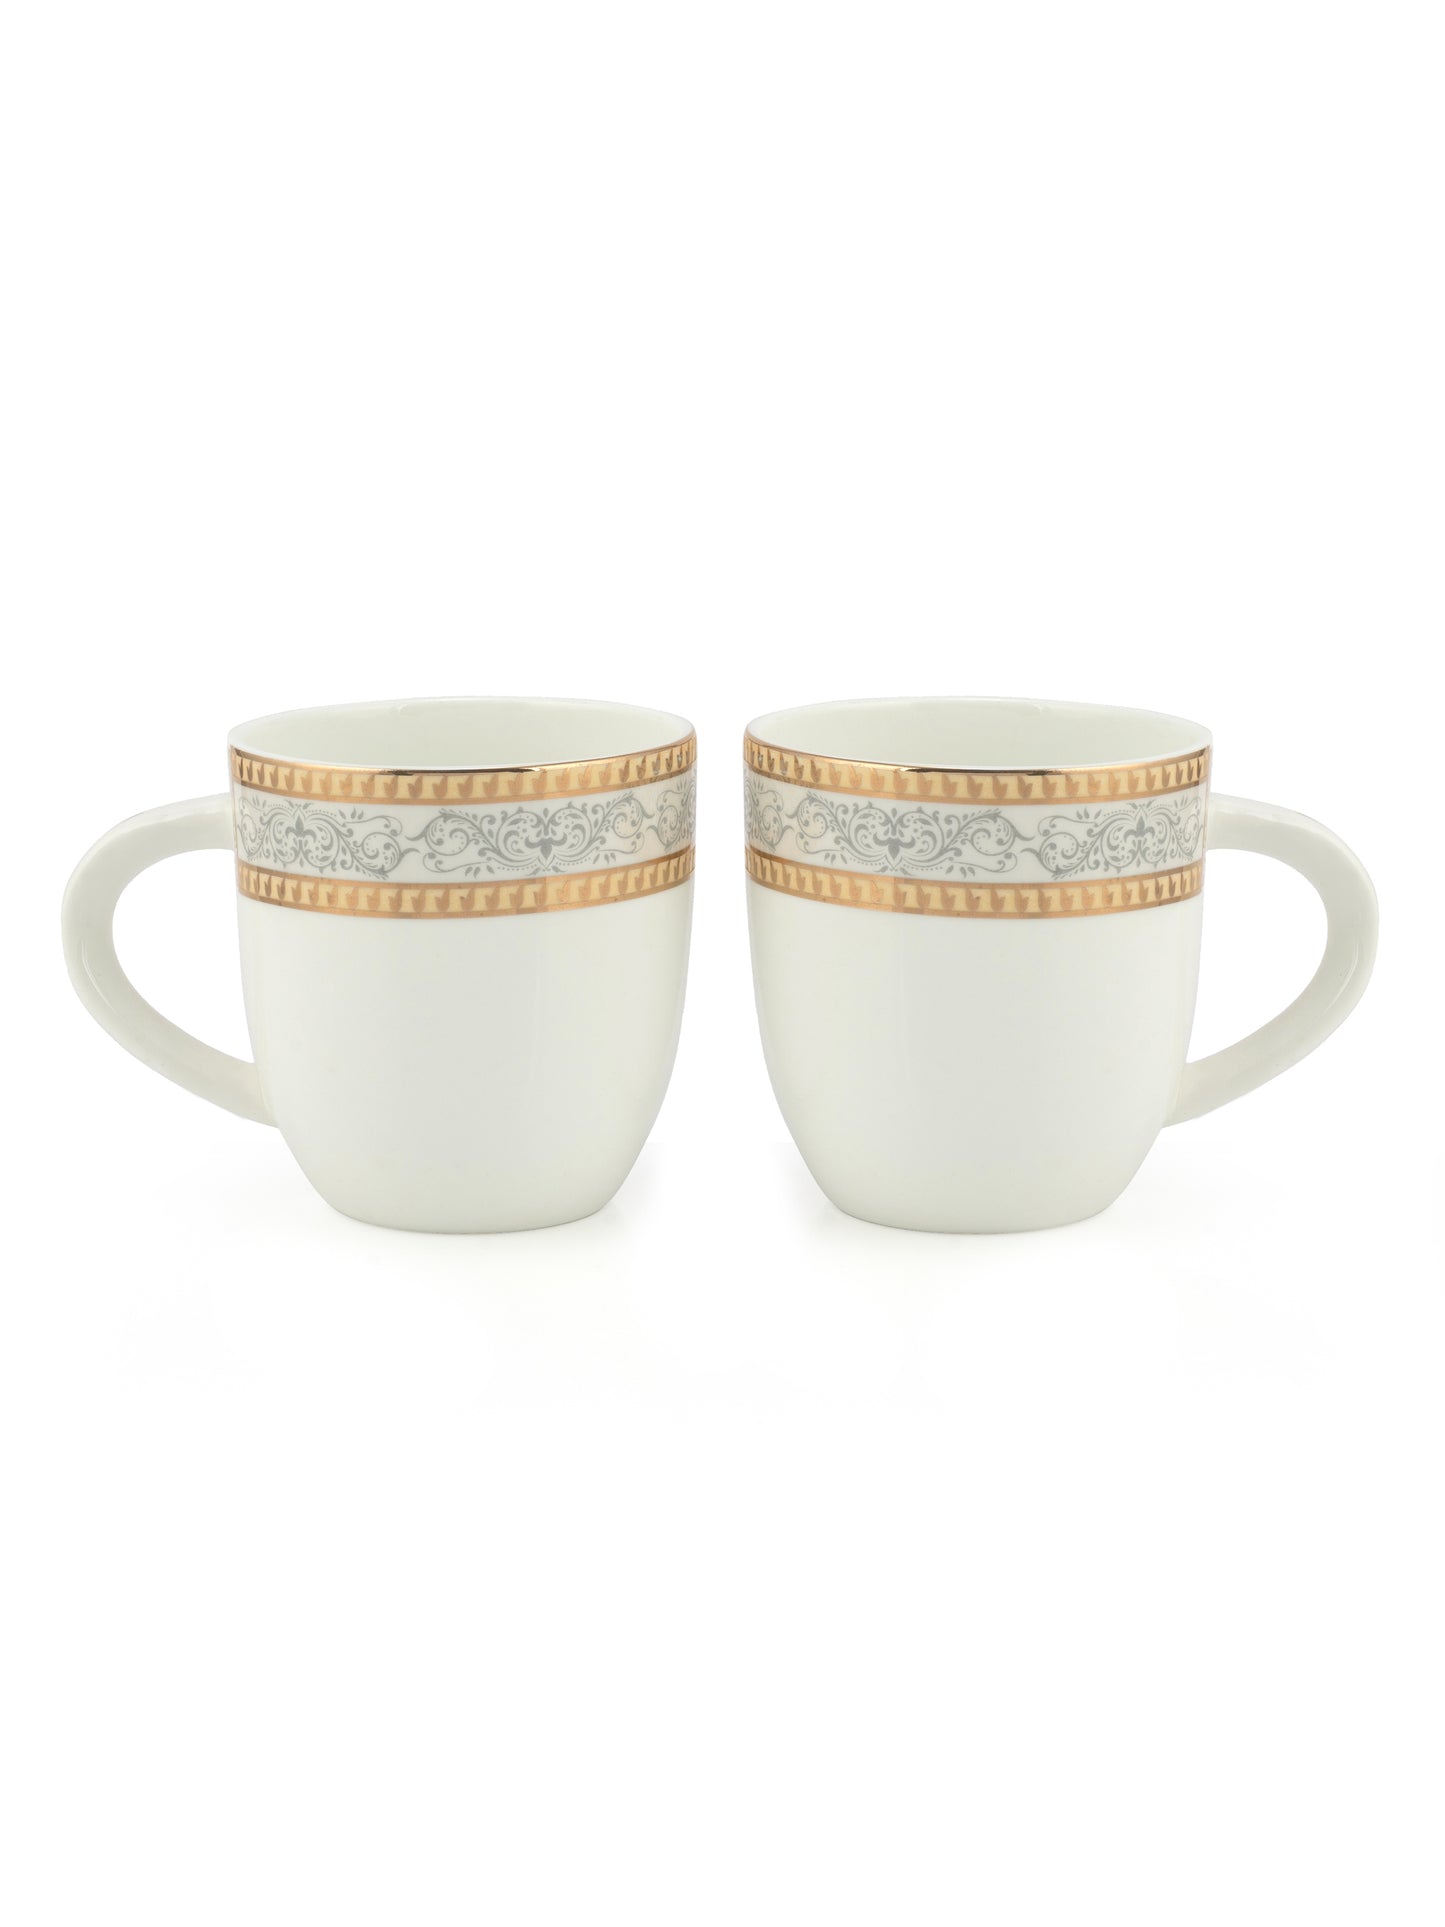 JCPL Aroma Skylight Coffee Mug/ Tea Cup, 210ml, Set of 6, Meraki (AS9)